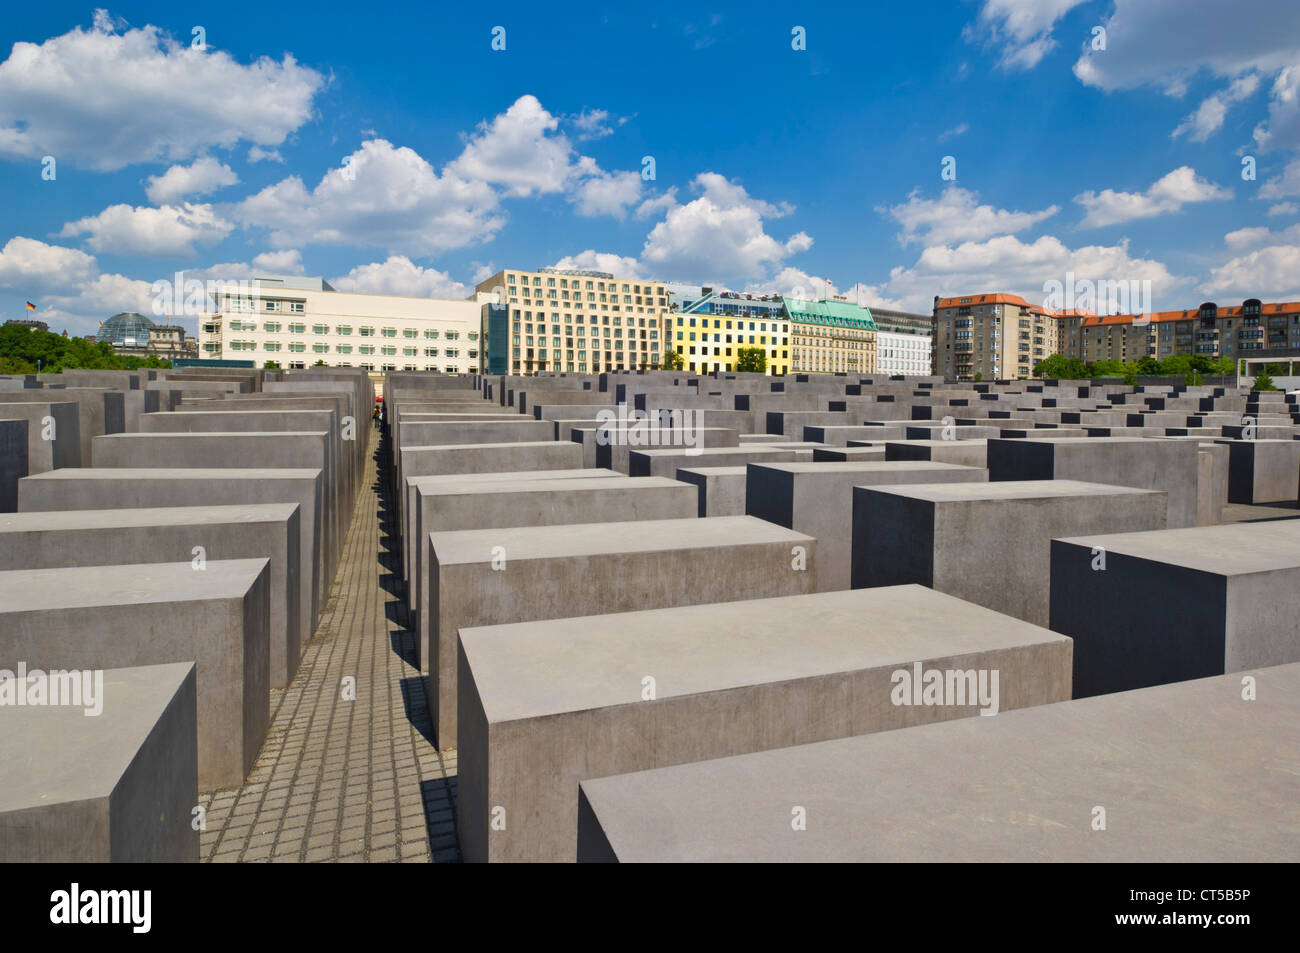 Mémorial aux Juifs assassinés d'Europe ou le mémorial de l'Holocauste l'Ebert Strasse Berlin Gremany eu Europe Banque D'Images